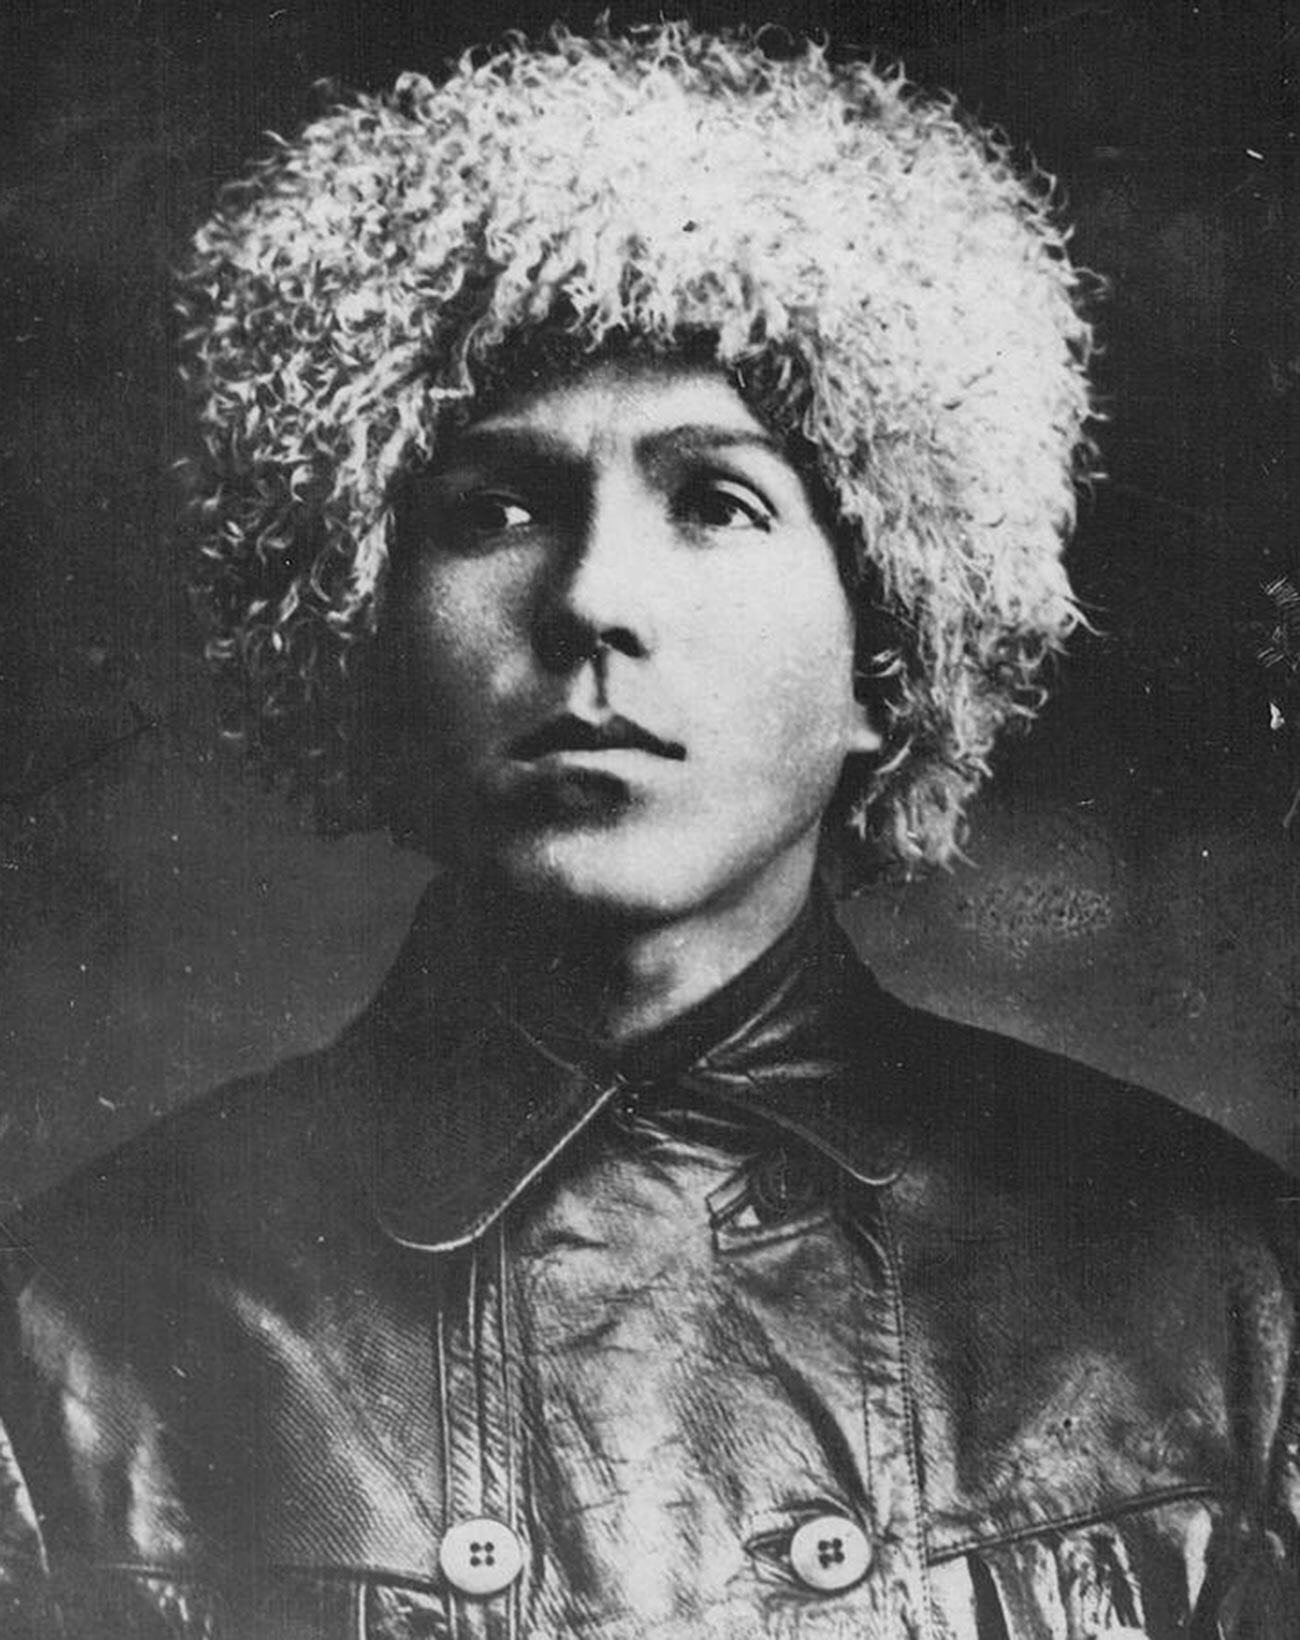 Foto de Nikolái Kuznetsov tomada en 1930.